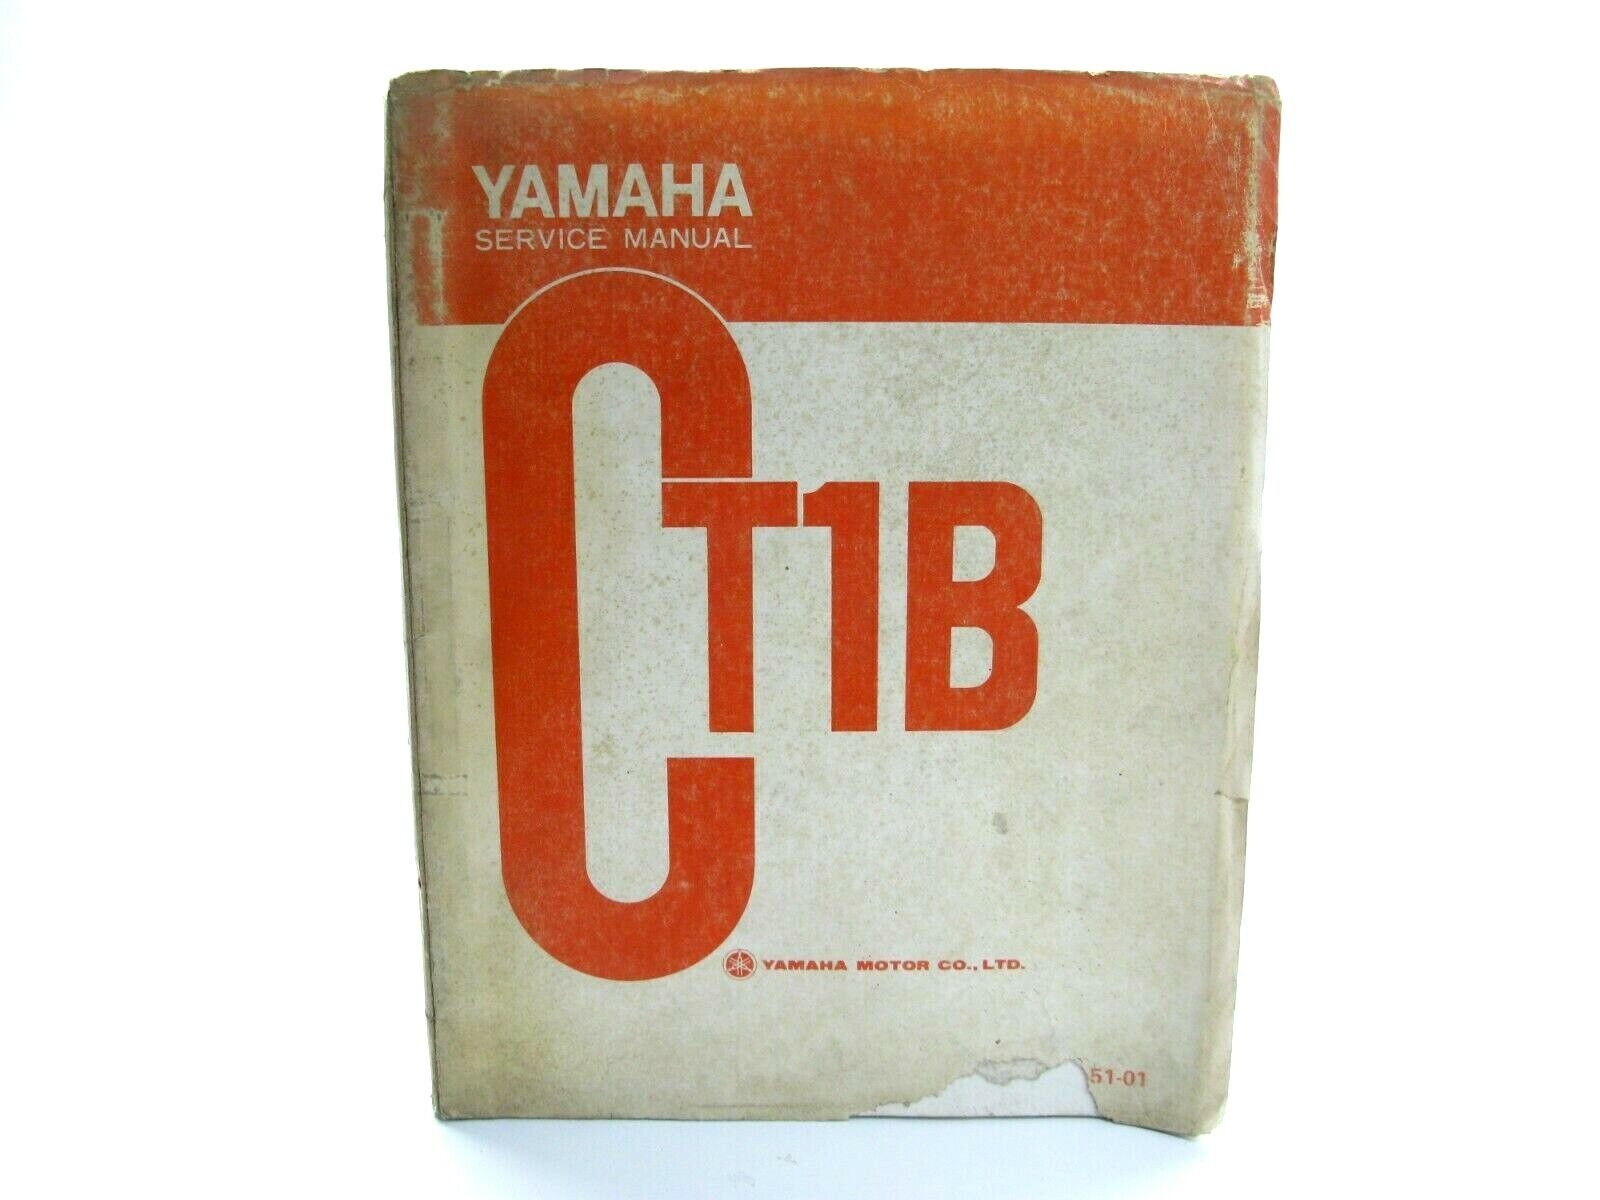 Yamaha CT1B CT1 175cc Motorcycle Service Manual Repair Book OEM Original 175